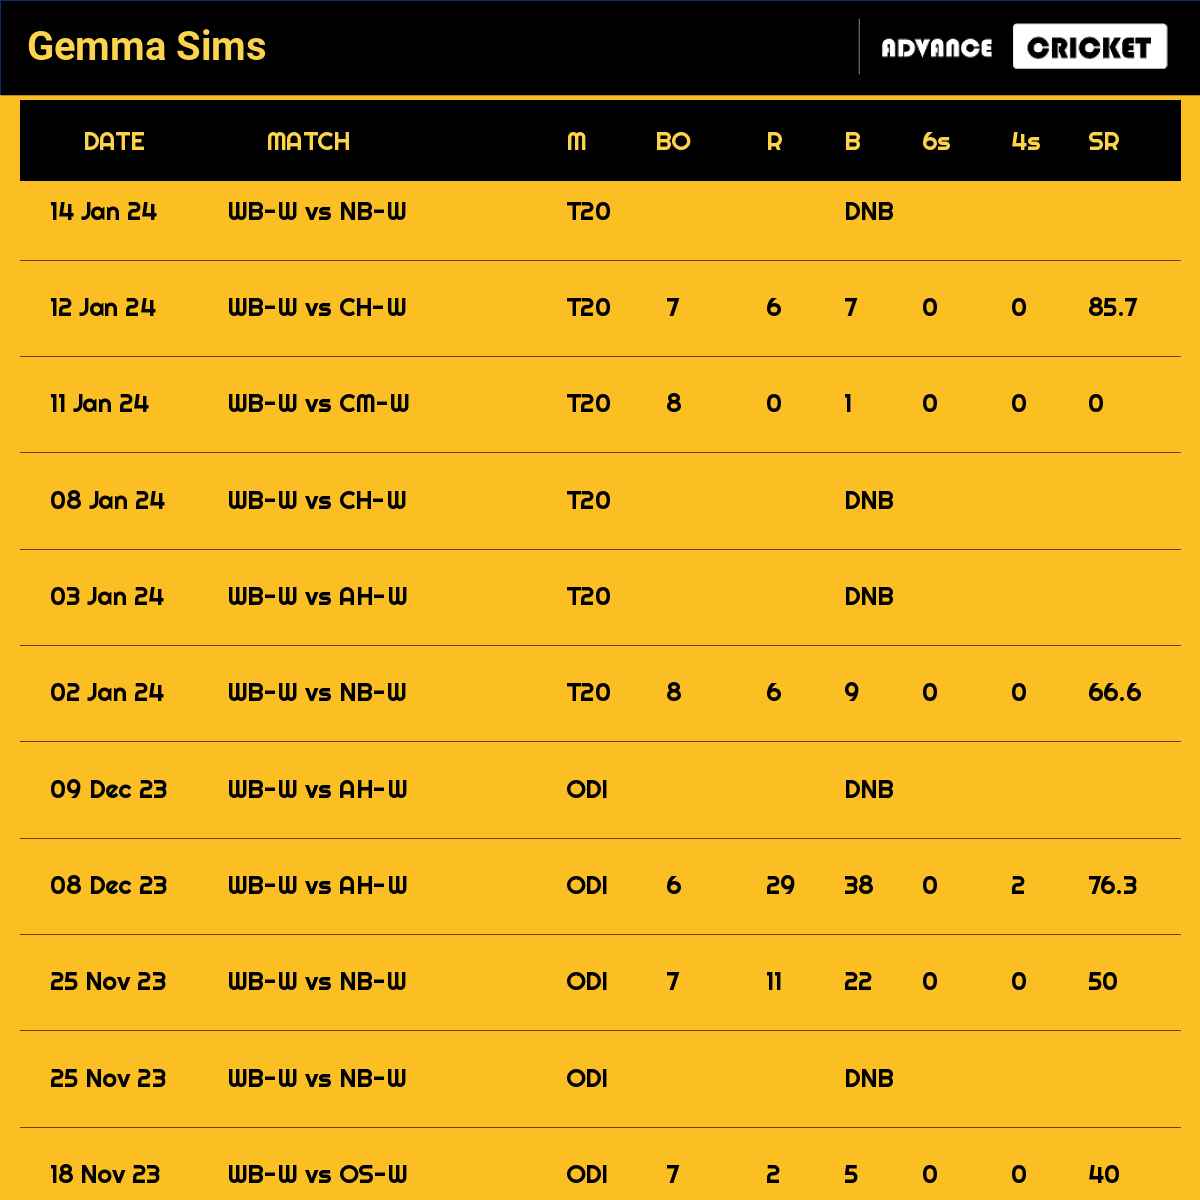 Gemma Sims recent matches